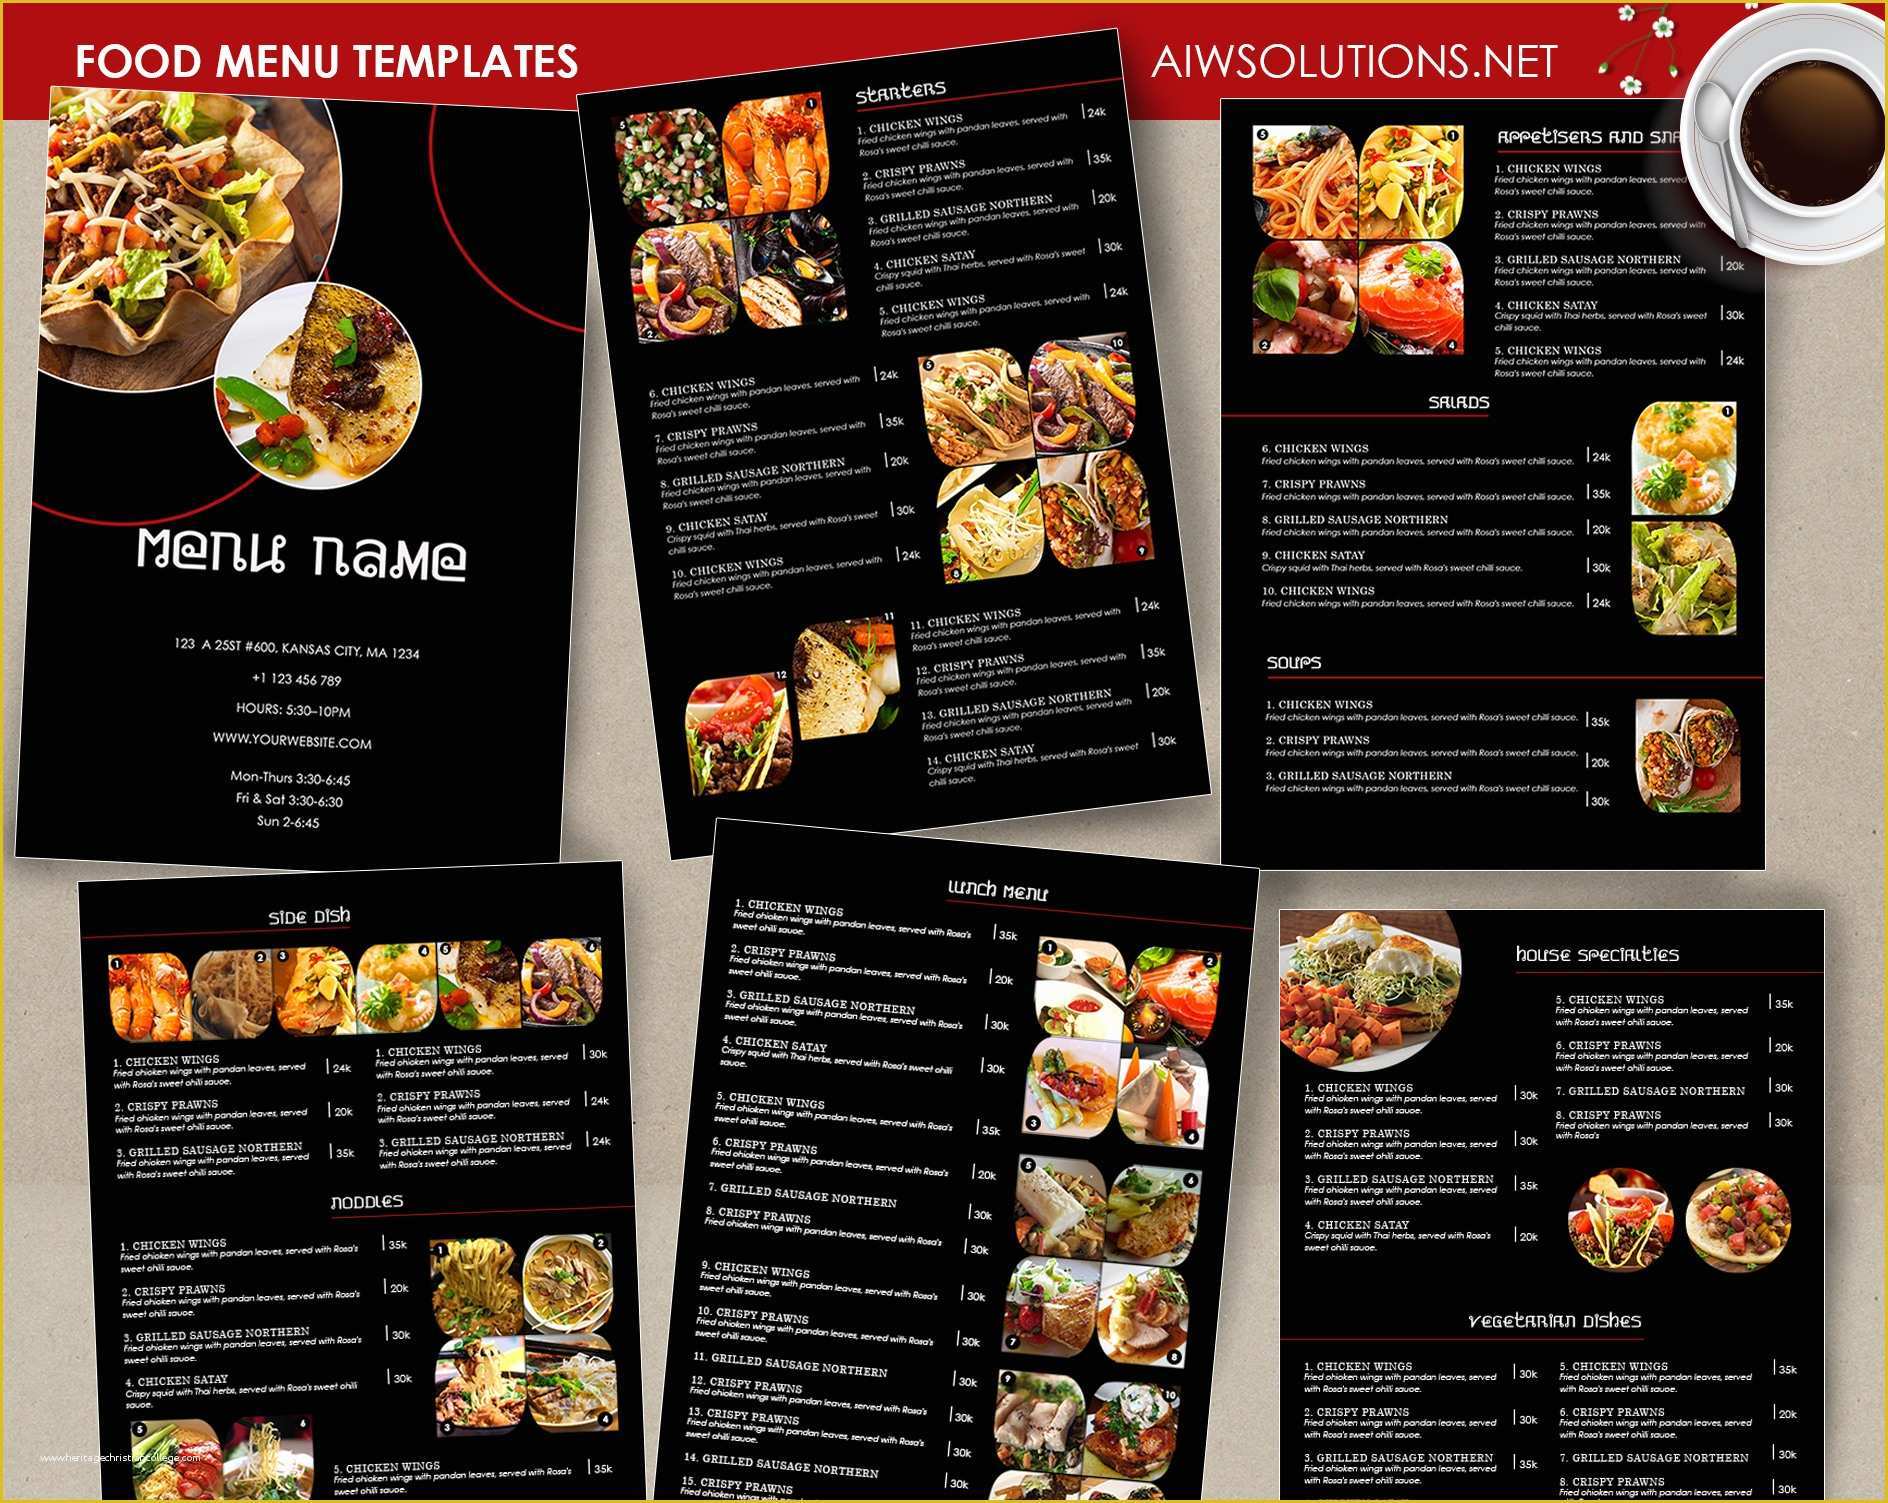 Thai Restaurant Menu Templates Free Of Design & Templates Menu Templates Wedding Menu Food